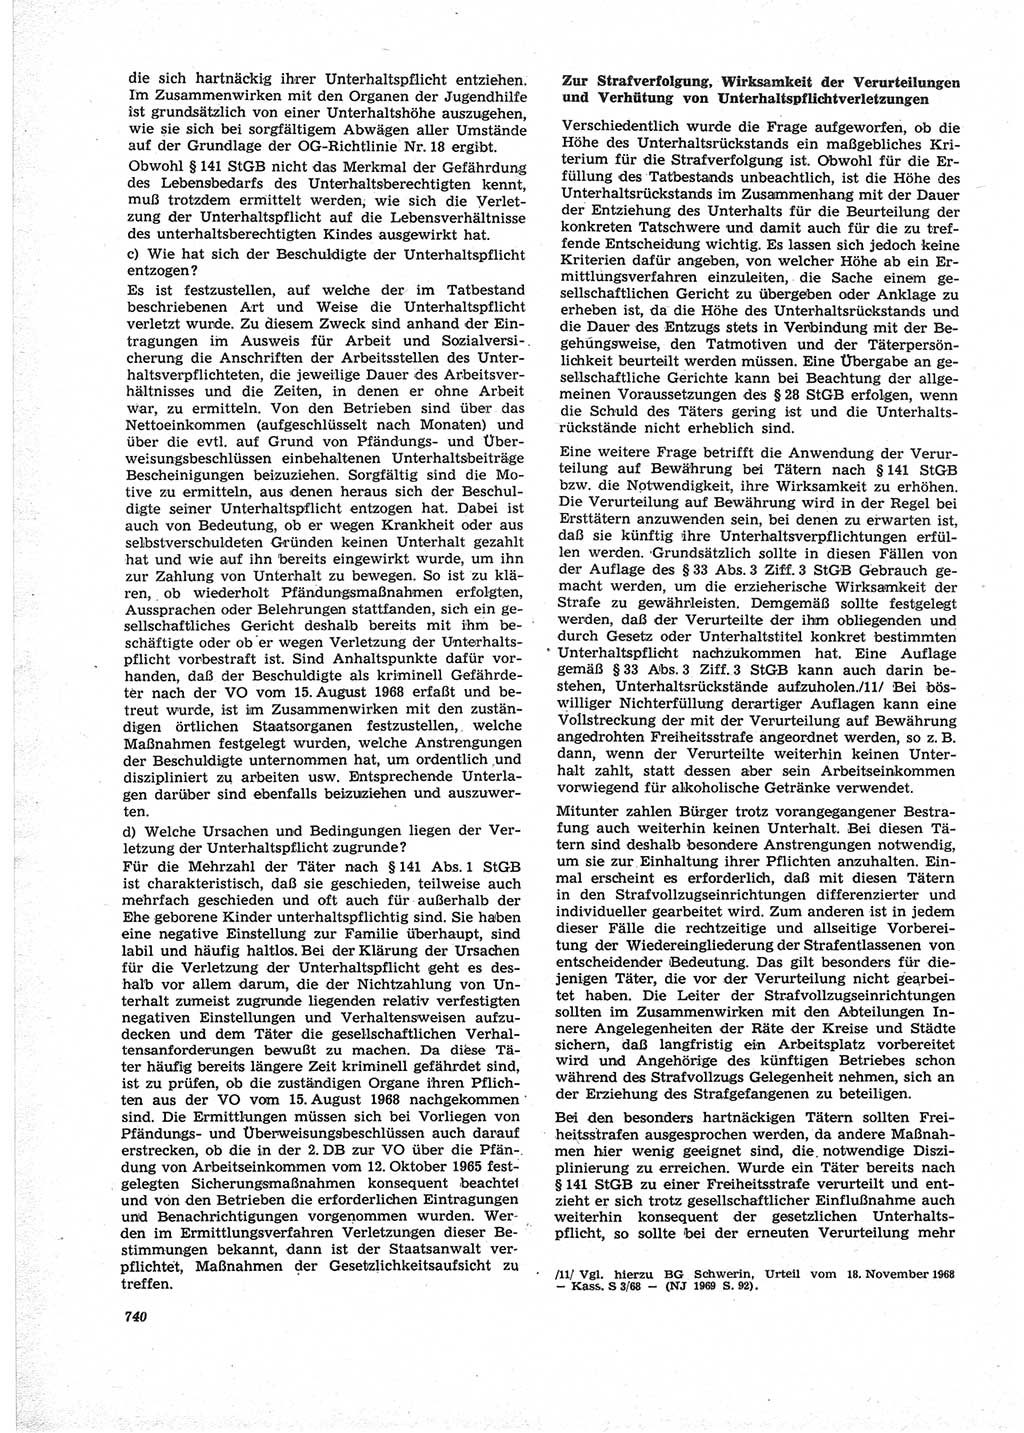 Neue Justiz (NJ), Zeitschrift für Recht und Rechtswissenschaft [Deutsche Demokratische Republik (DDR)], 25. Jahrgang 1971, Seite 740 (NJ DDR 1971, S. 740)